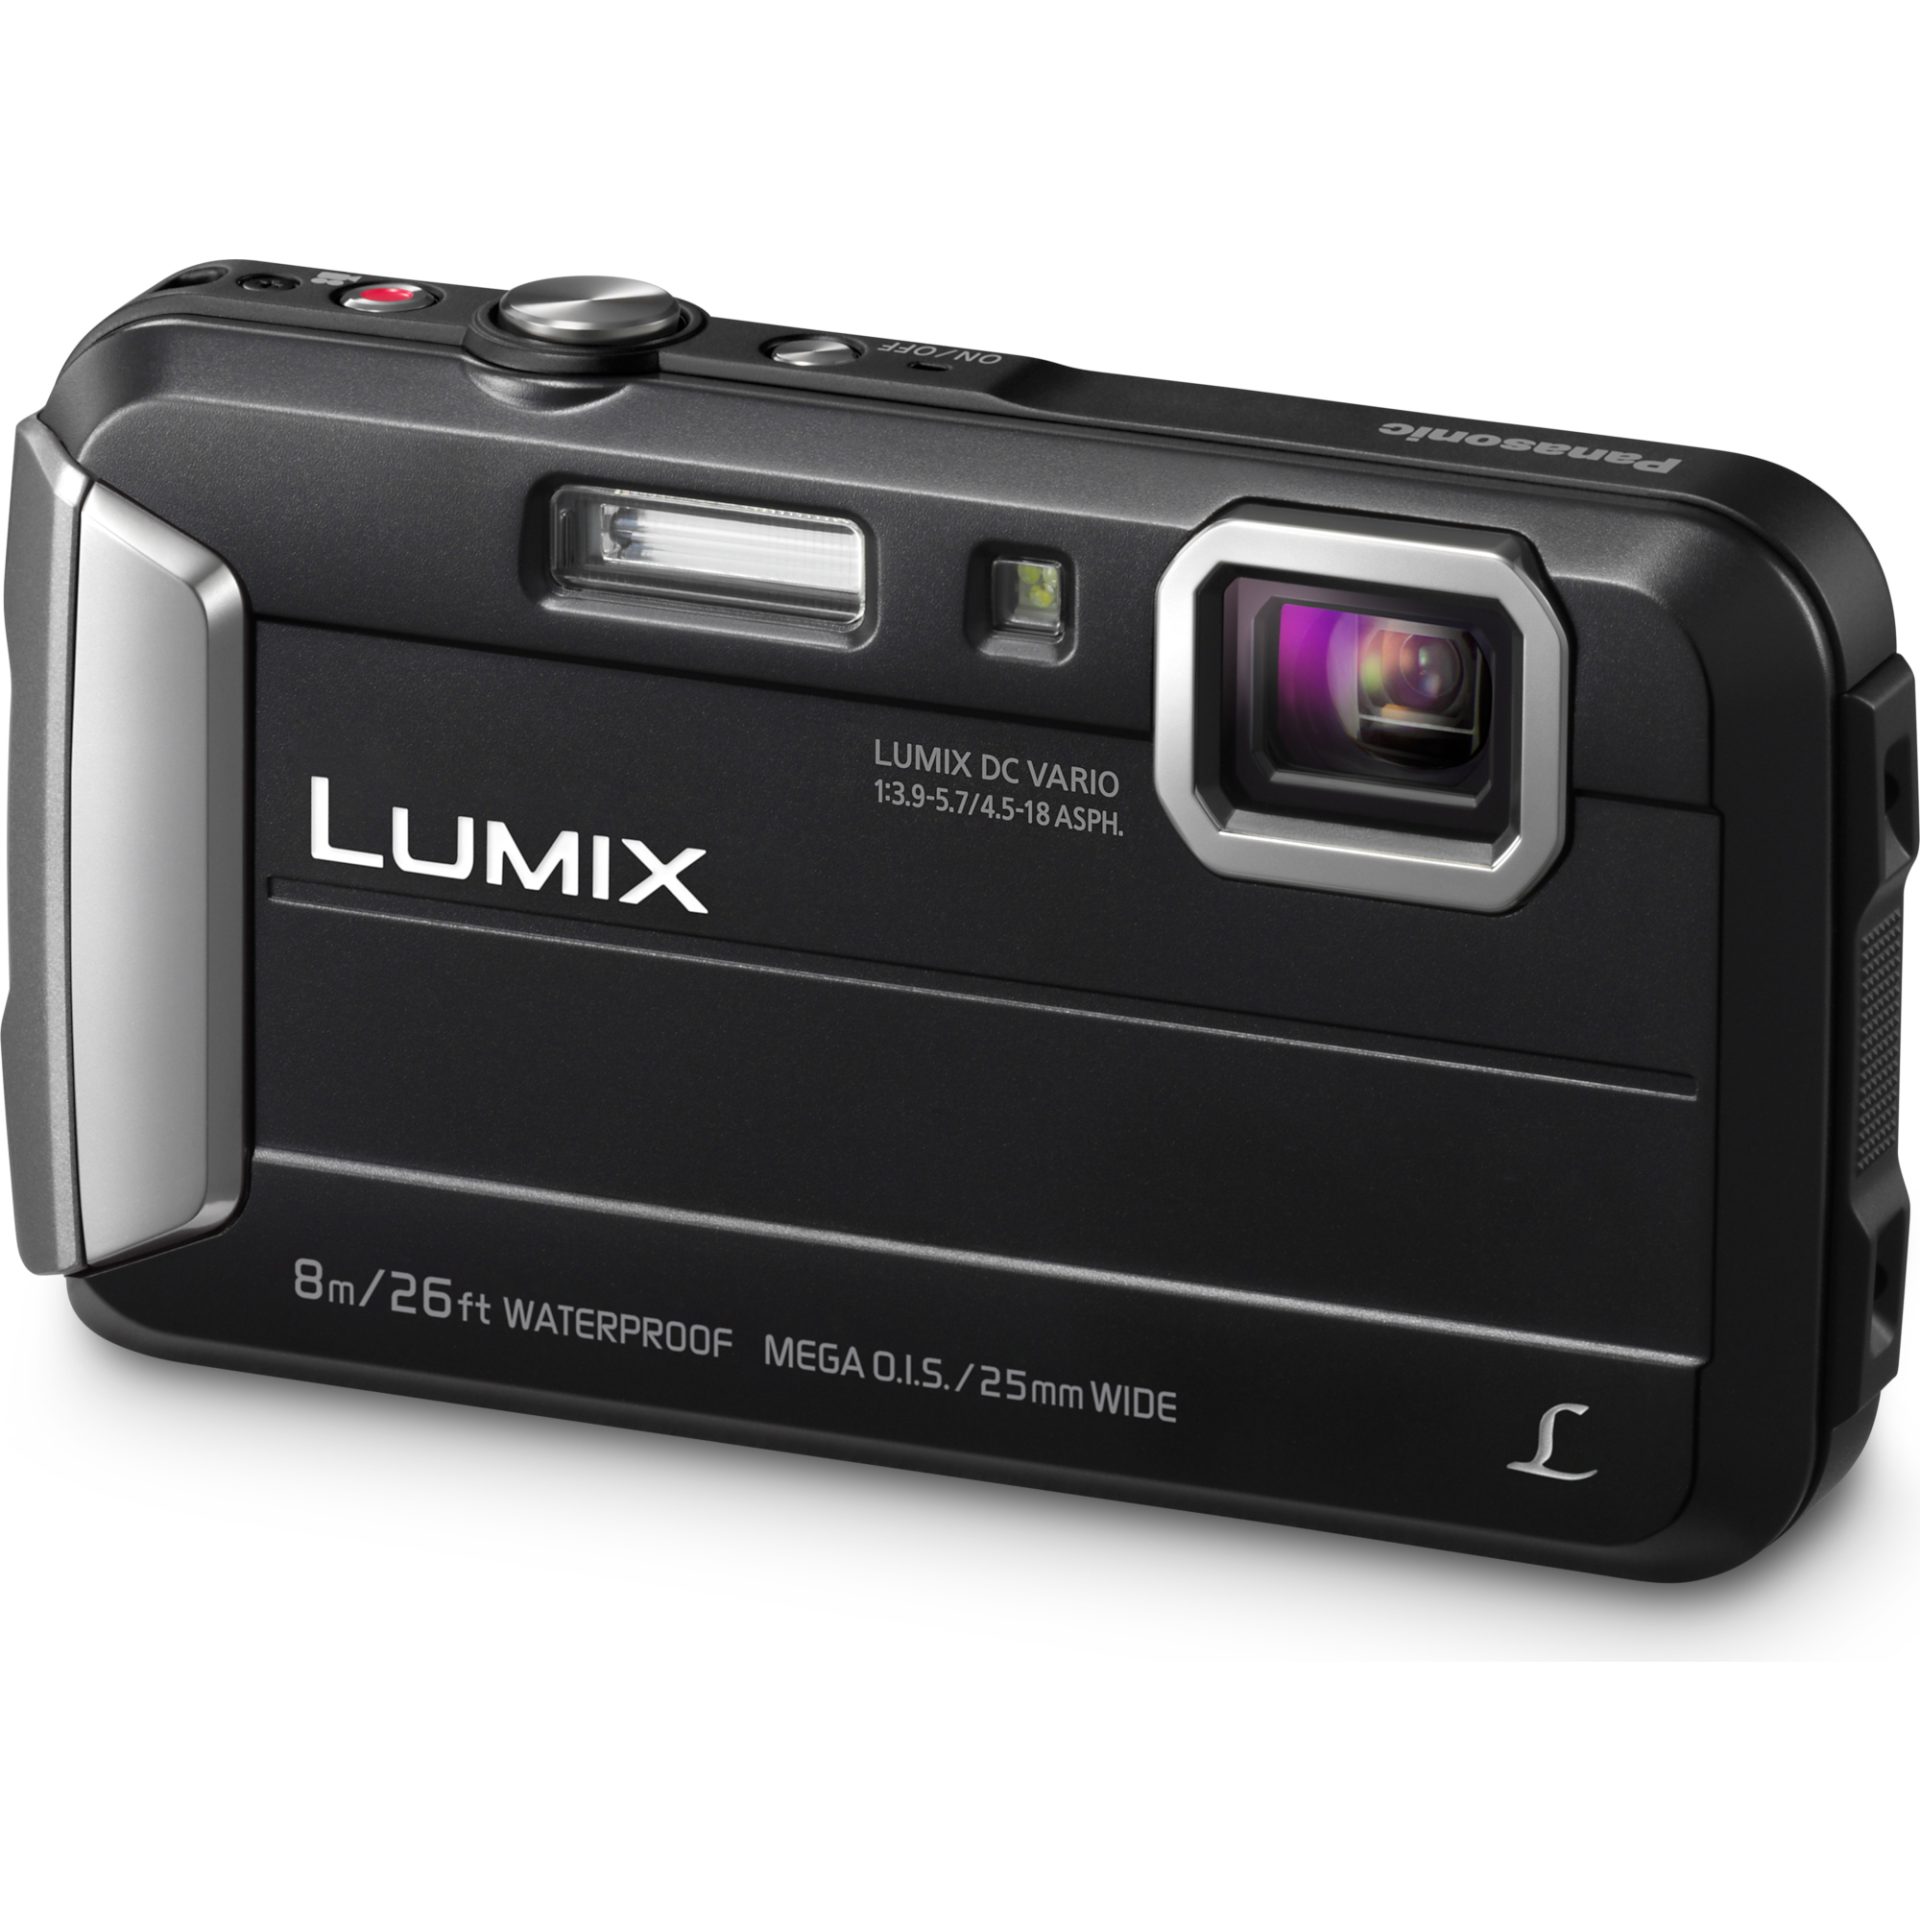 Panasonic DMC-FT30 Lumix kompaktní fotoaparát (vodotěsný až 8m, nárazuvzdorný a mrazuvzdorný, 220MB paměť, mega O.I.S., MP4 HD video), černá